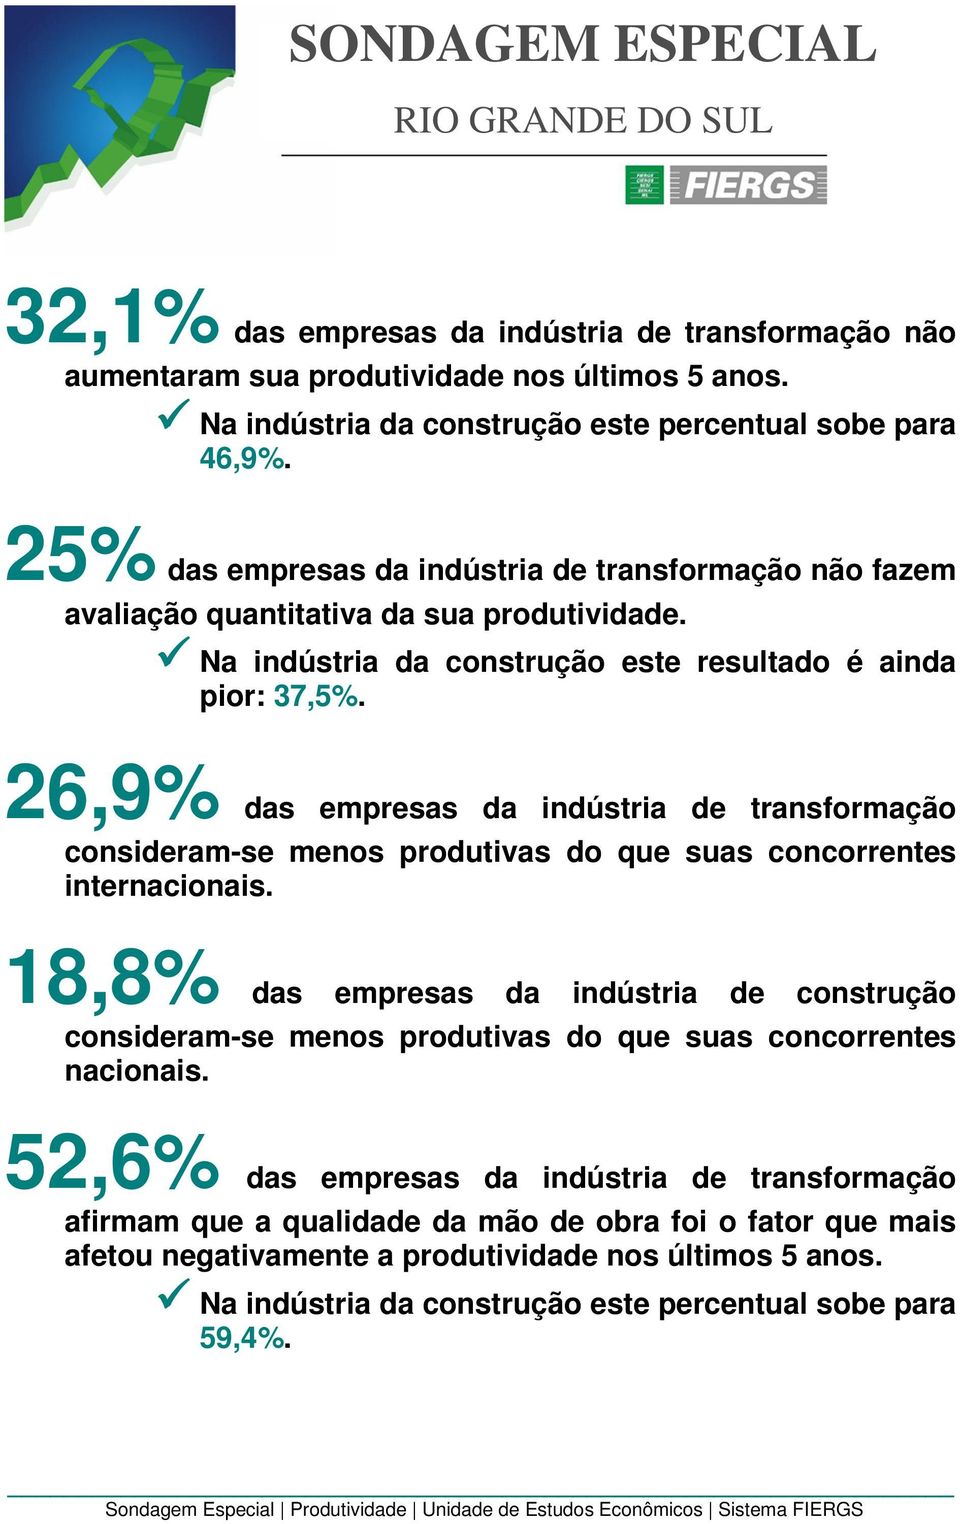 26,9% das empresas da indústria de transformação consideram-se menos produtivas do que suas concorrentes internacionais.